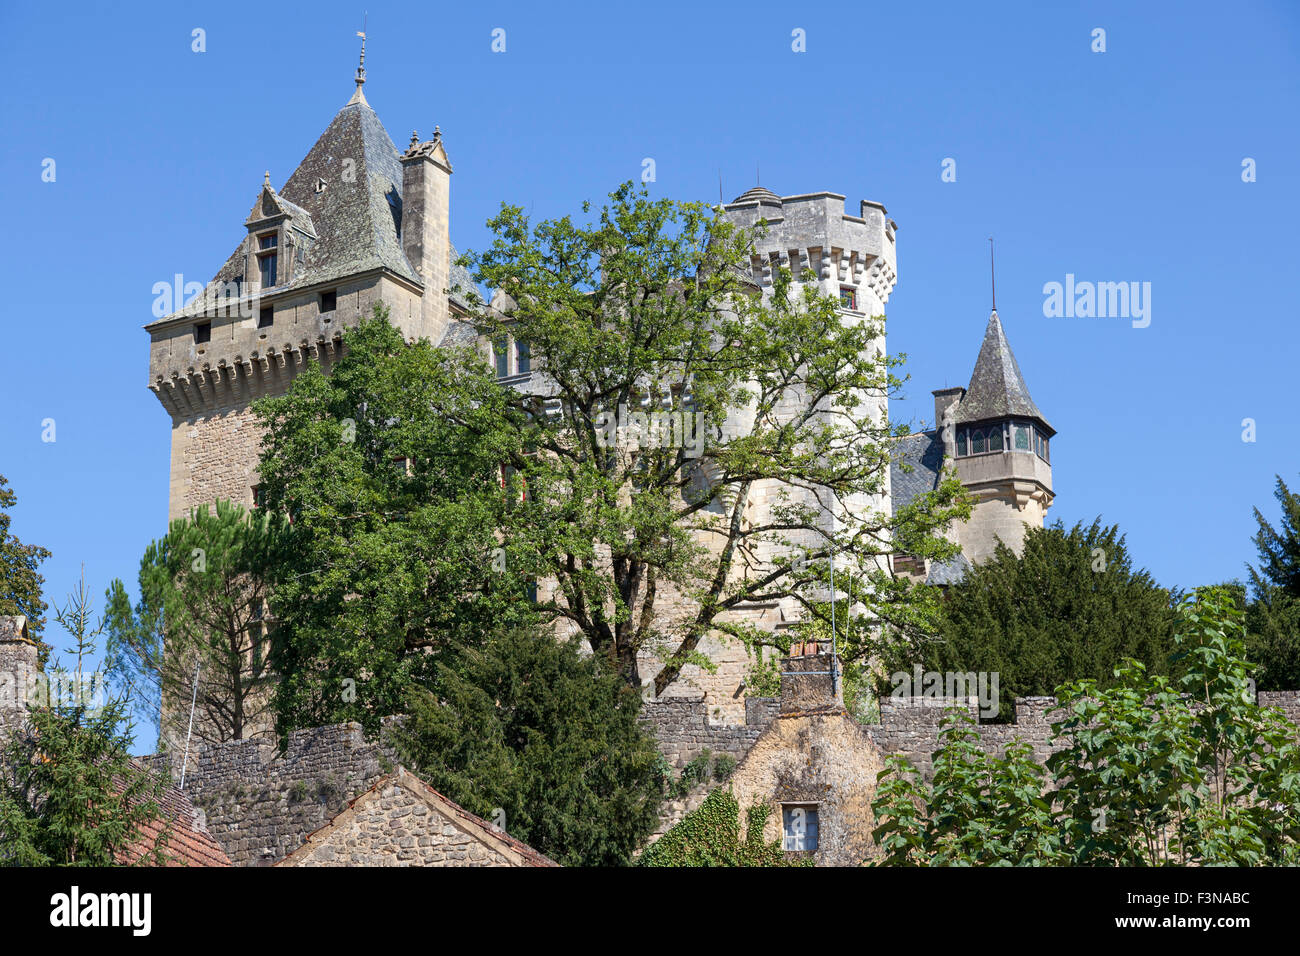 La Montfort roccaforte, a Vitrac (Dordogne - Francia). Le château fortifié de Montfort, à Vitrac (Dordogne - Francia). Foto Stock